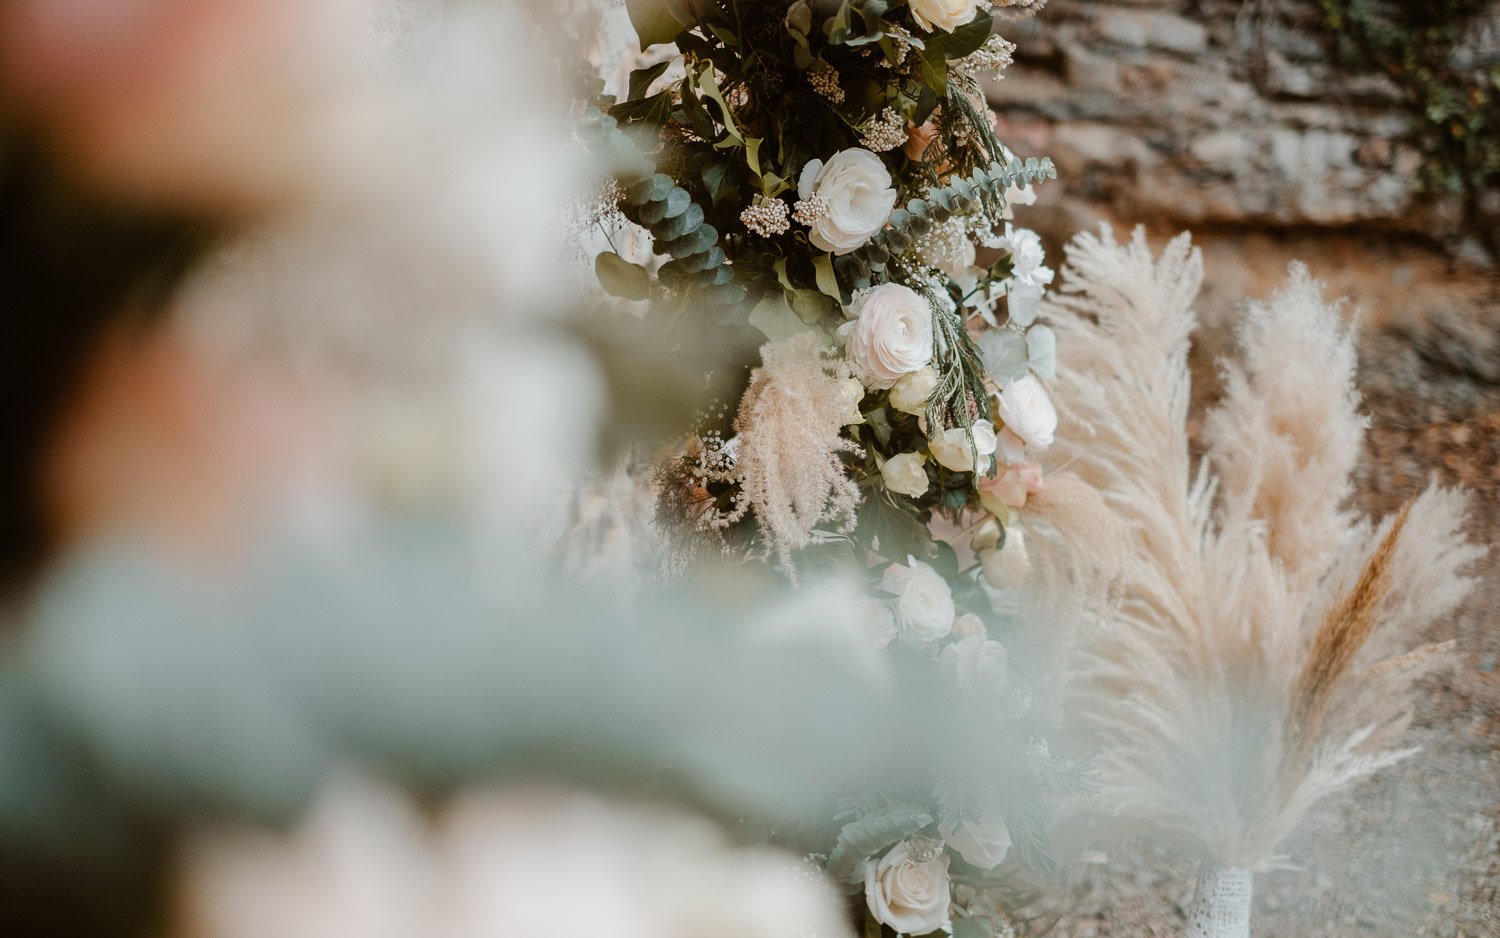 Décoration florale d’une cérémonie laïque de mariage par Petite Fleur